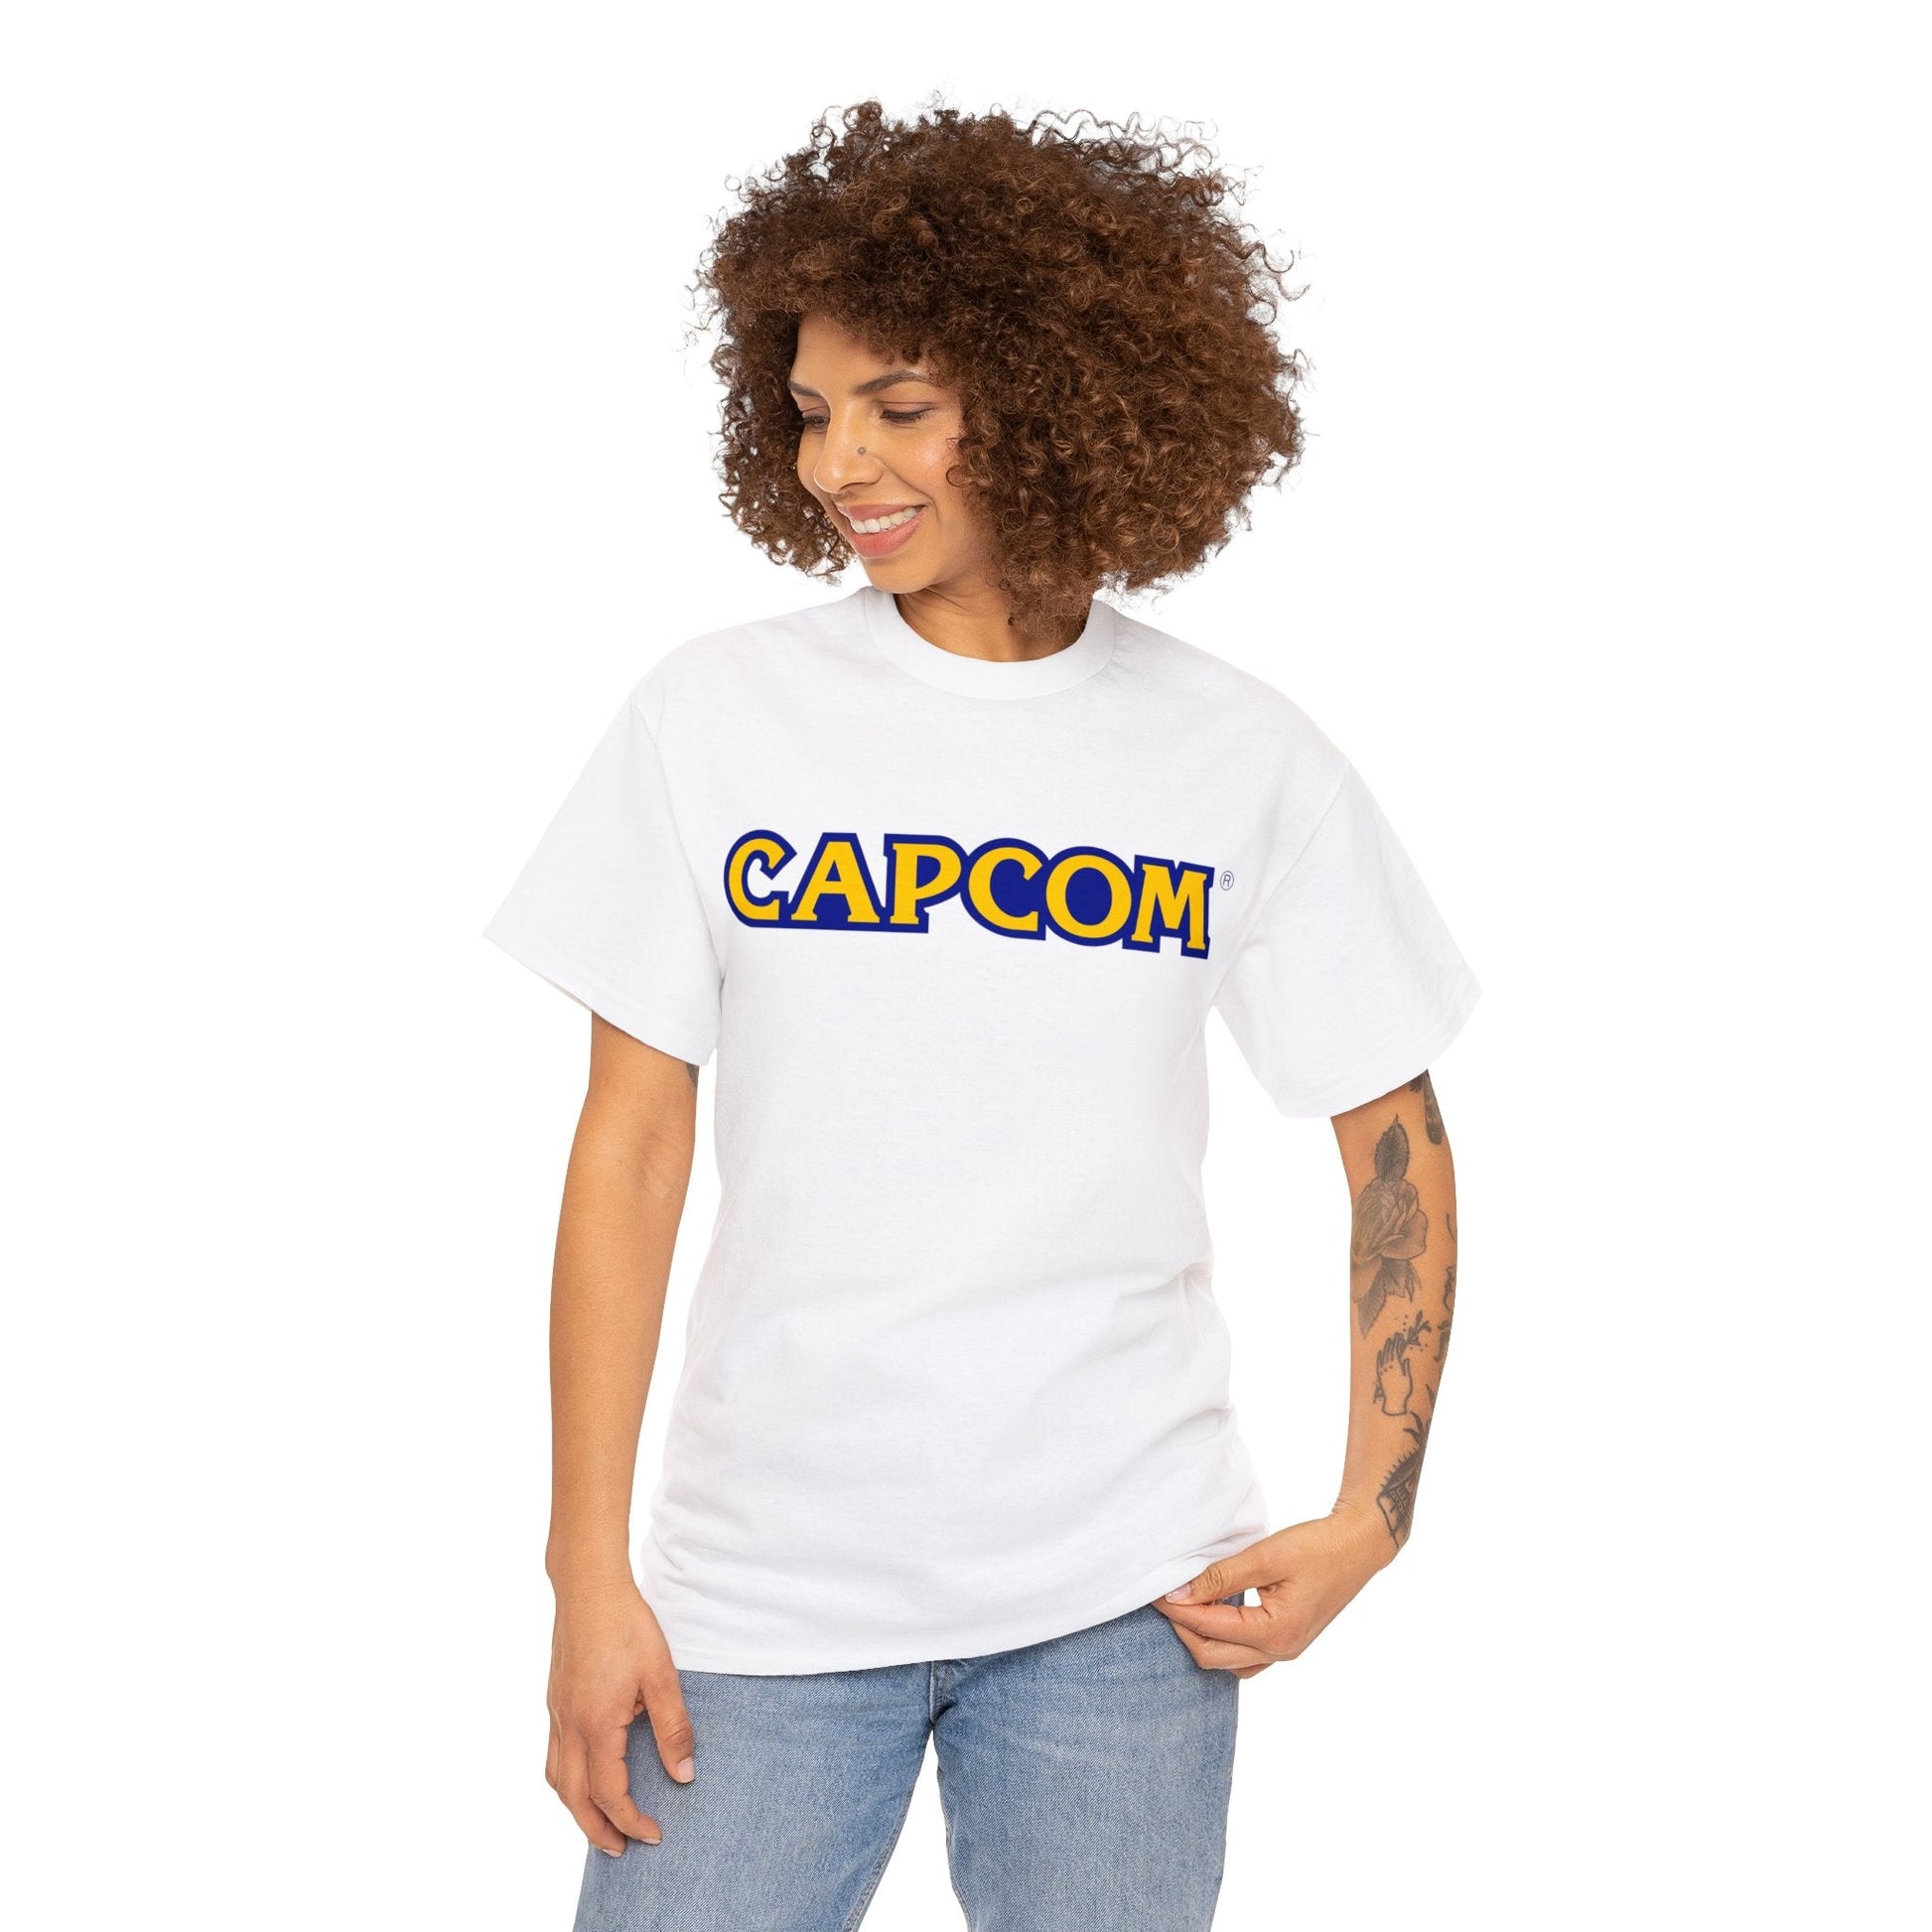 Capcom Video Game Logo T-Shirt - RetroTeeShop